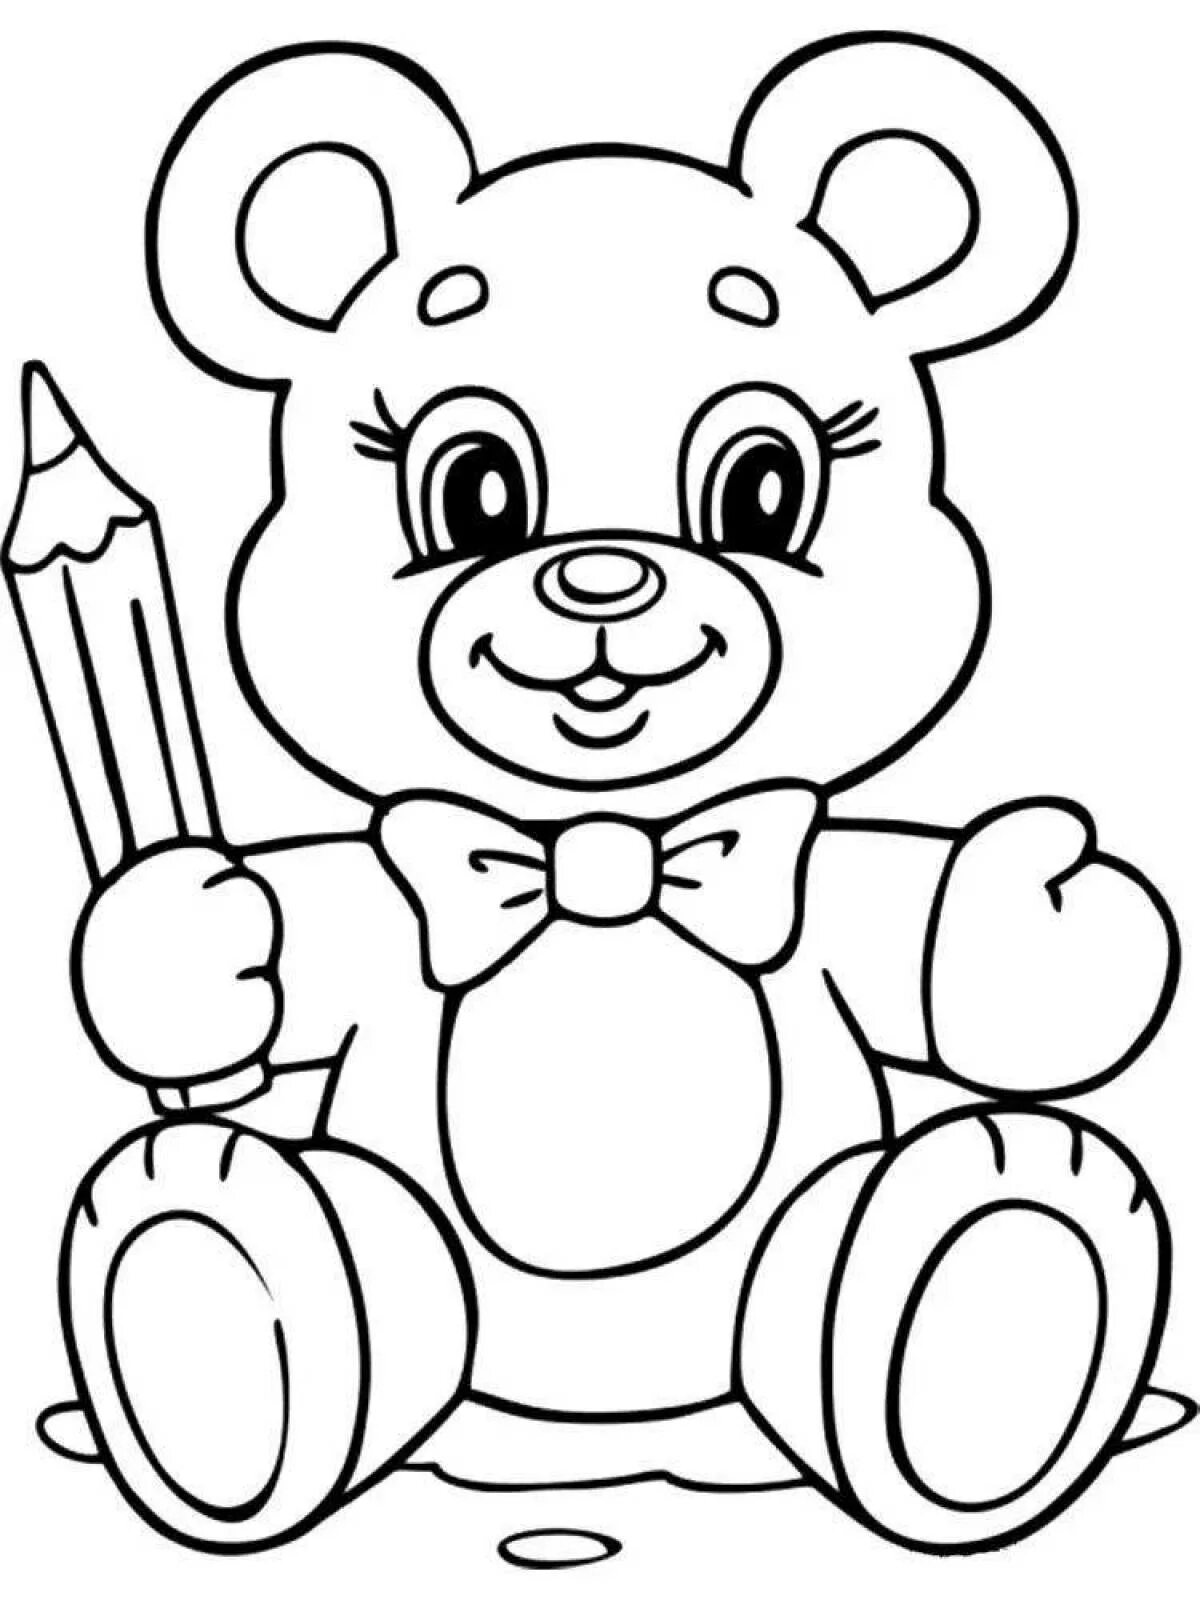 Раскраска 3 года мишка. Медвежонок раскраска для детей. Раскраска для малышей. Игрушки. Раскраска "мишки". Мишка раскраска для малышей.